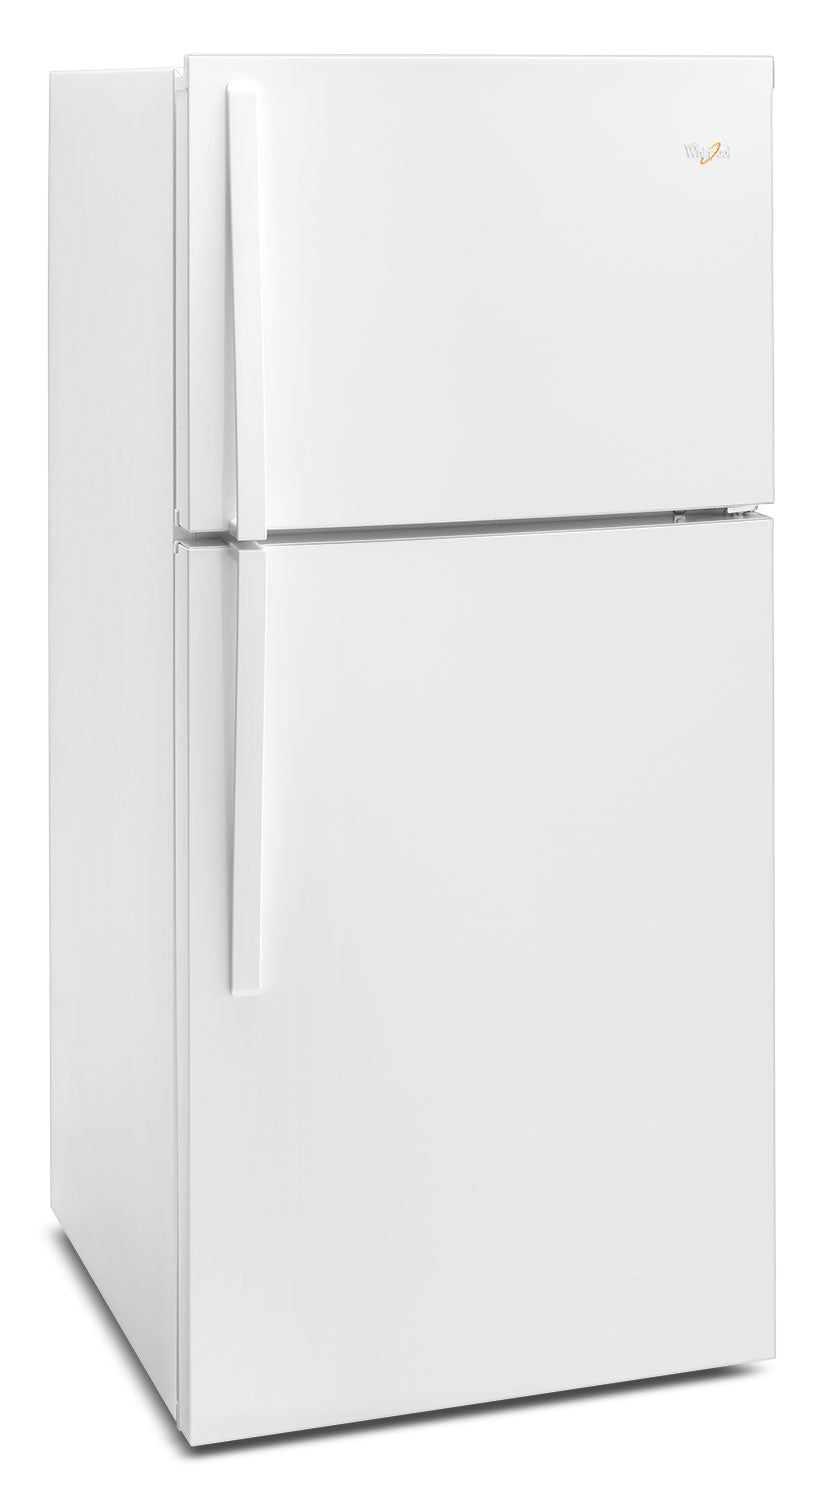 Whirlpool White Top-Freezer Refrigerator (19.2 Cu. Ft.) - WRT519SZDW